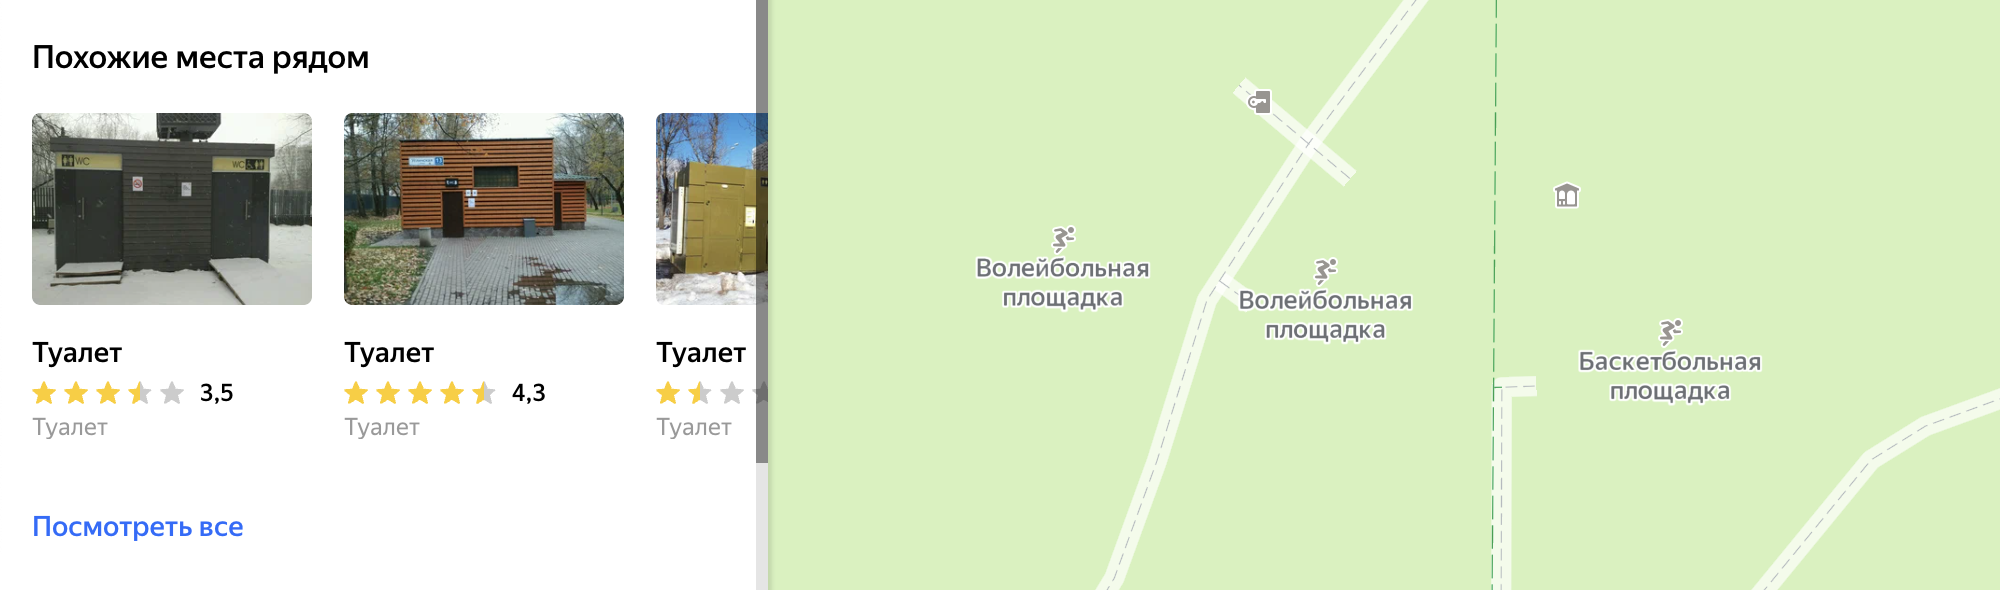 Если найти комнату не удалось, то можно открыть в «Яндекс-картах» вкладку «Похожие места рядом» и посмотреть ближайшие туалеты: возможно, там окажется пиктограмма с мамой и младенцем на пеленальном столике